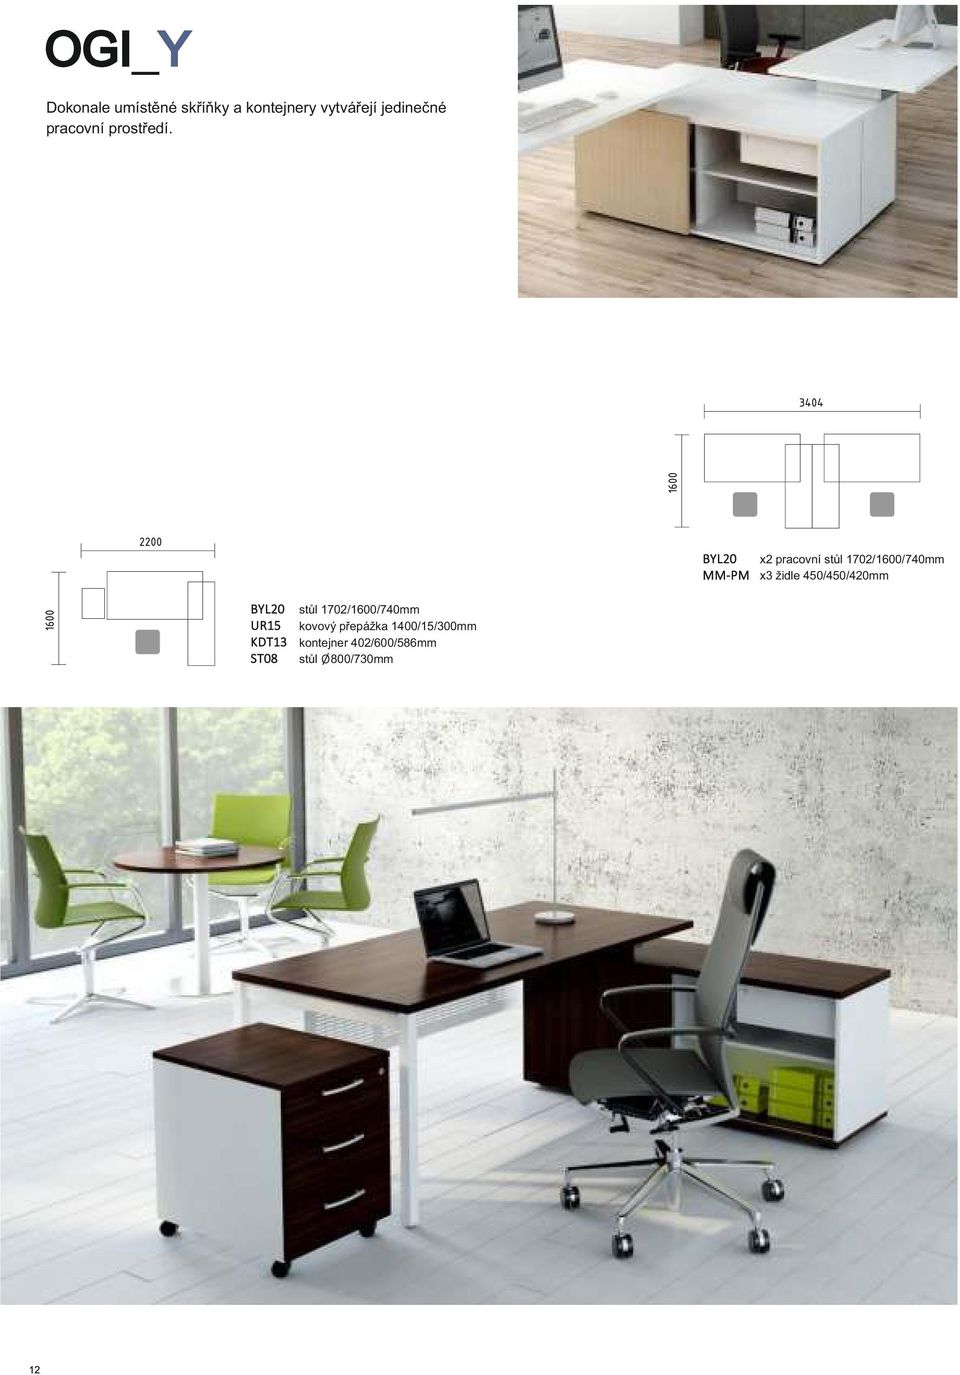 x2 pracovní stůl 1702/1600/740mm x3 židle 450/450/420mm